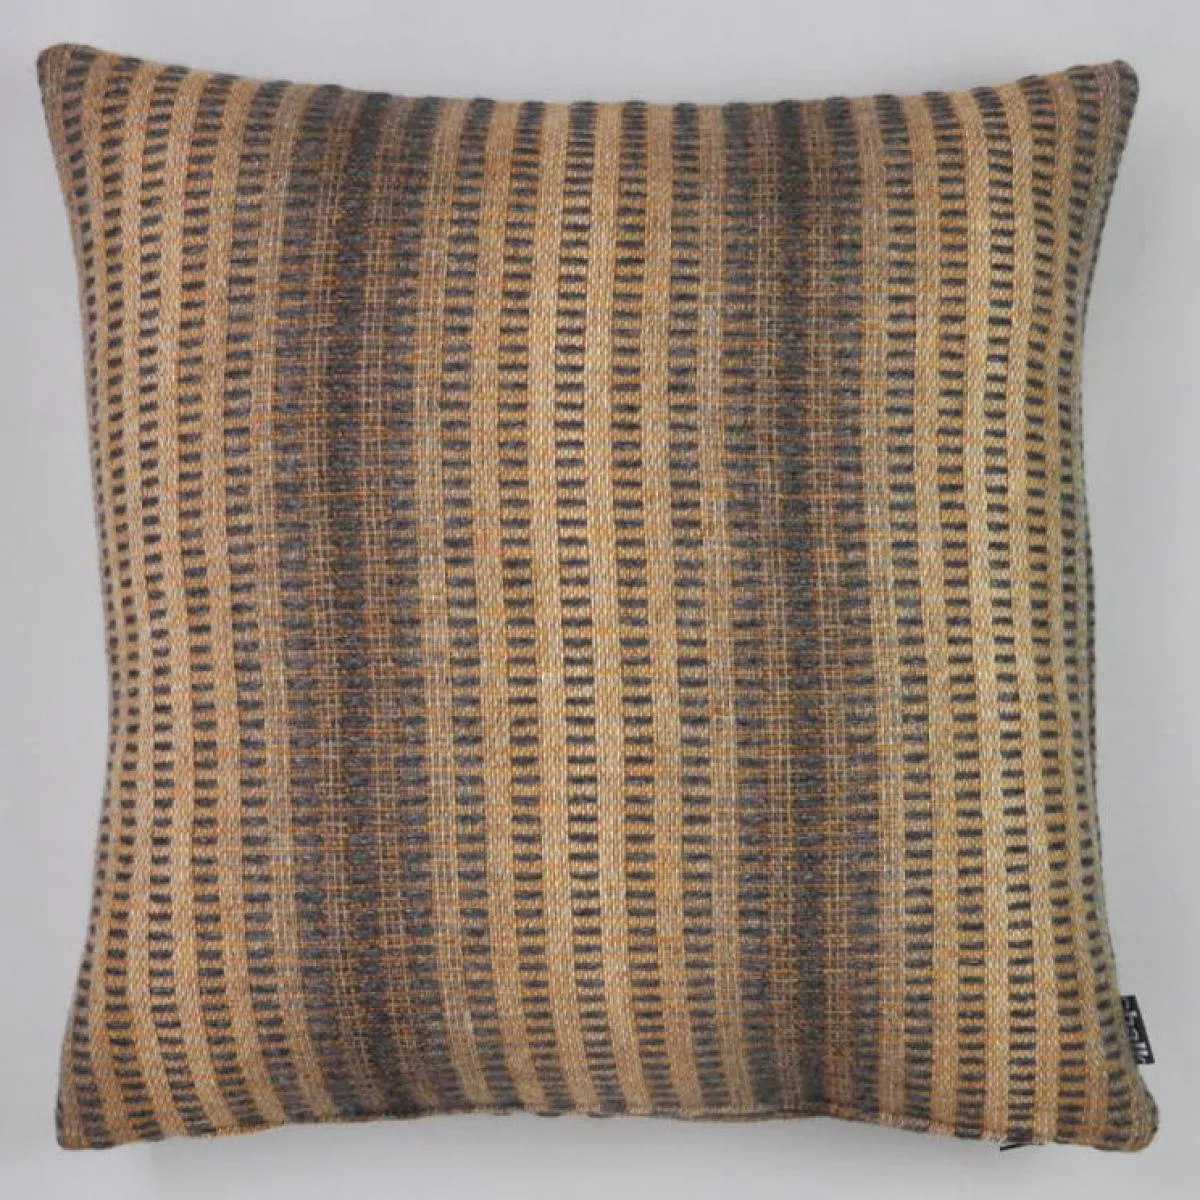 Merino lambswool cushion "Nimbus" (50 x 50 cm)